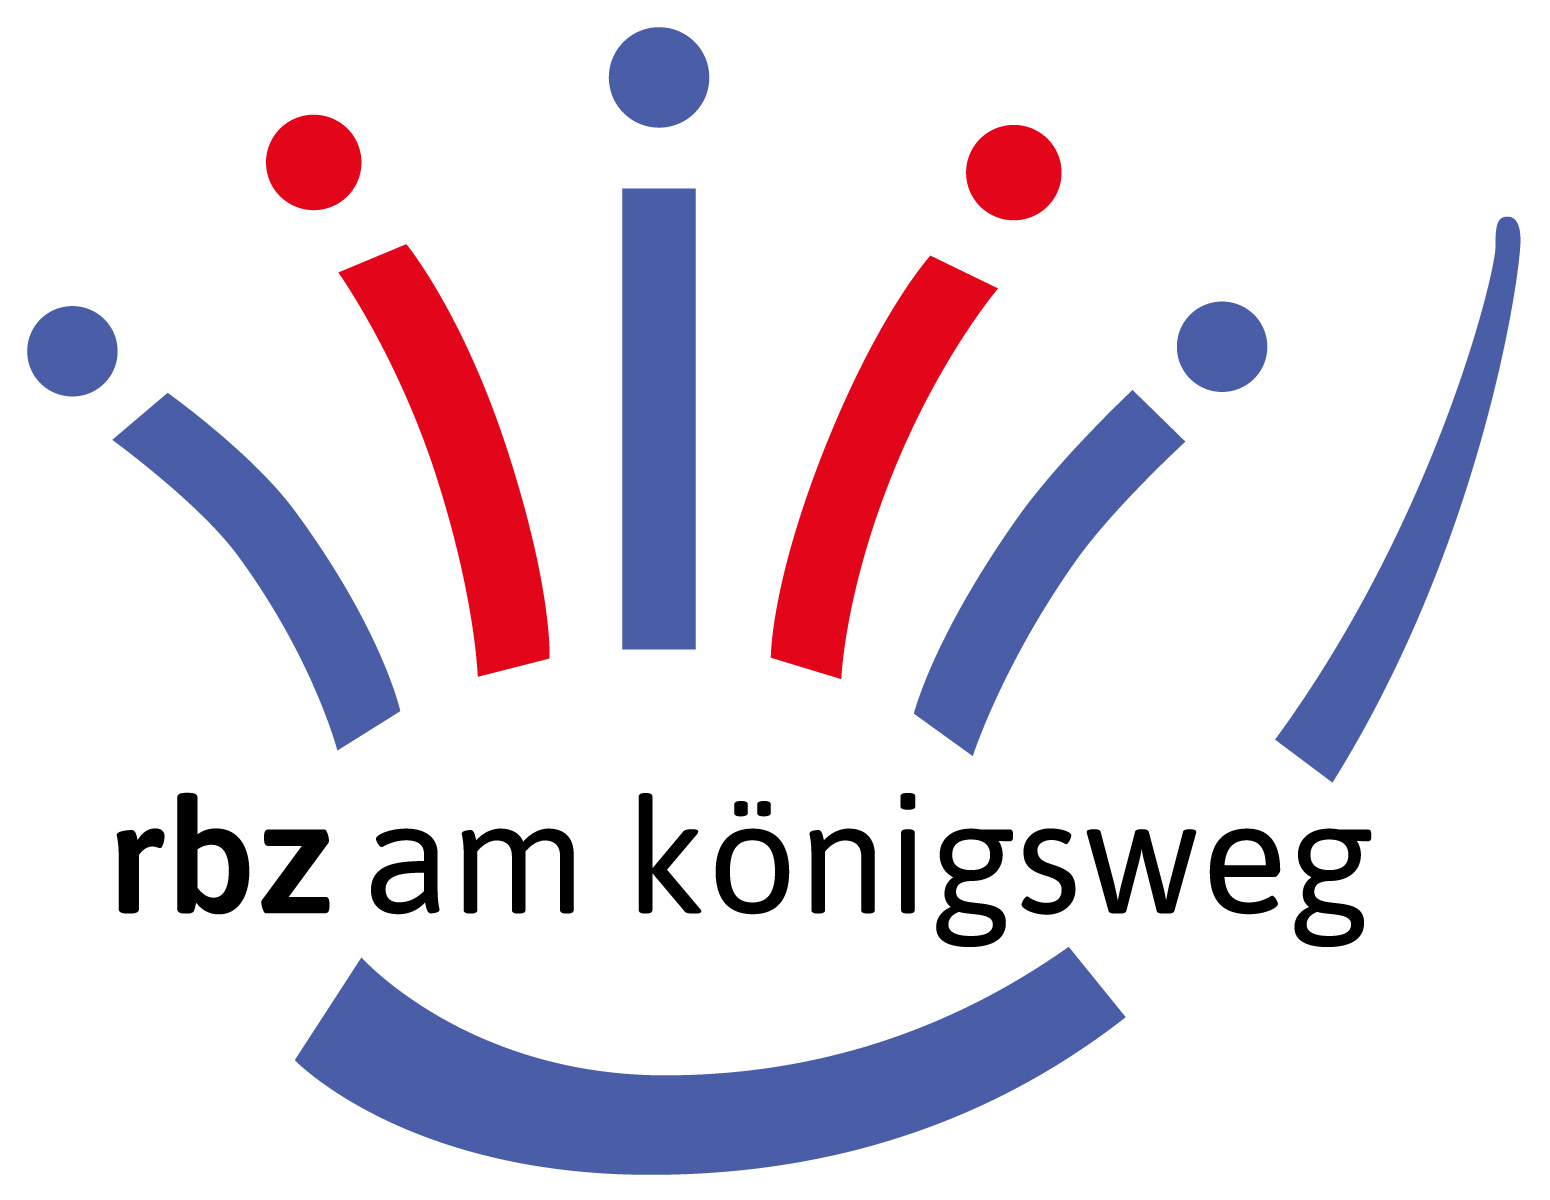 Koe 2018 logo mit